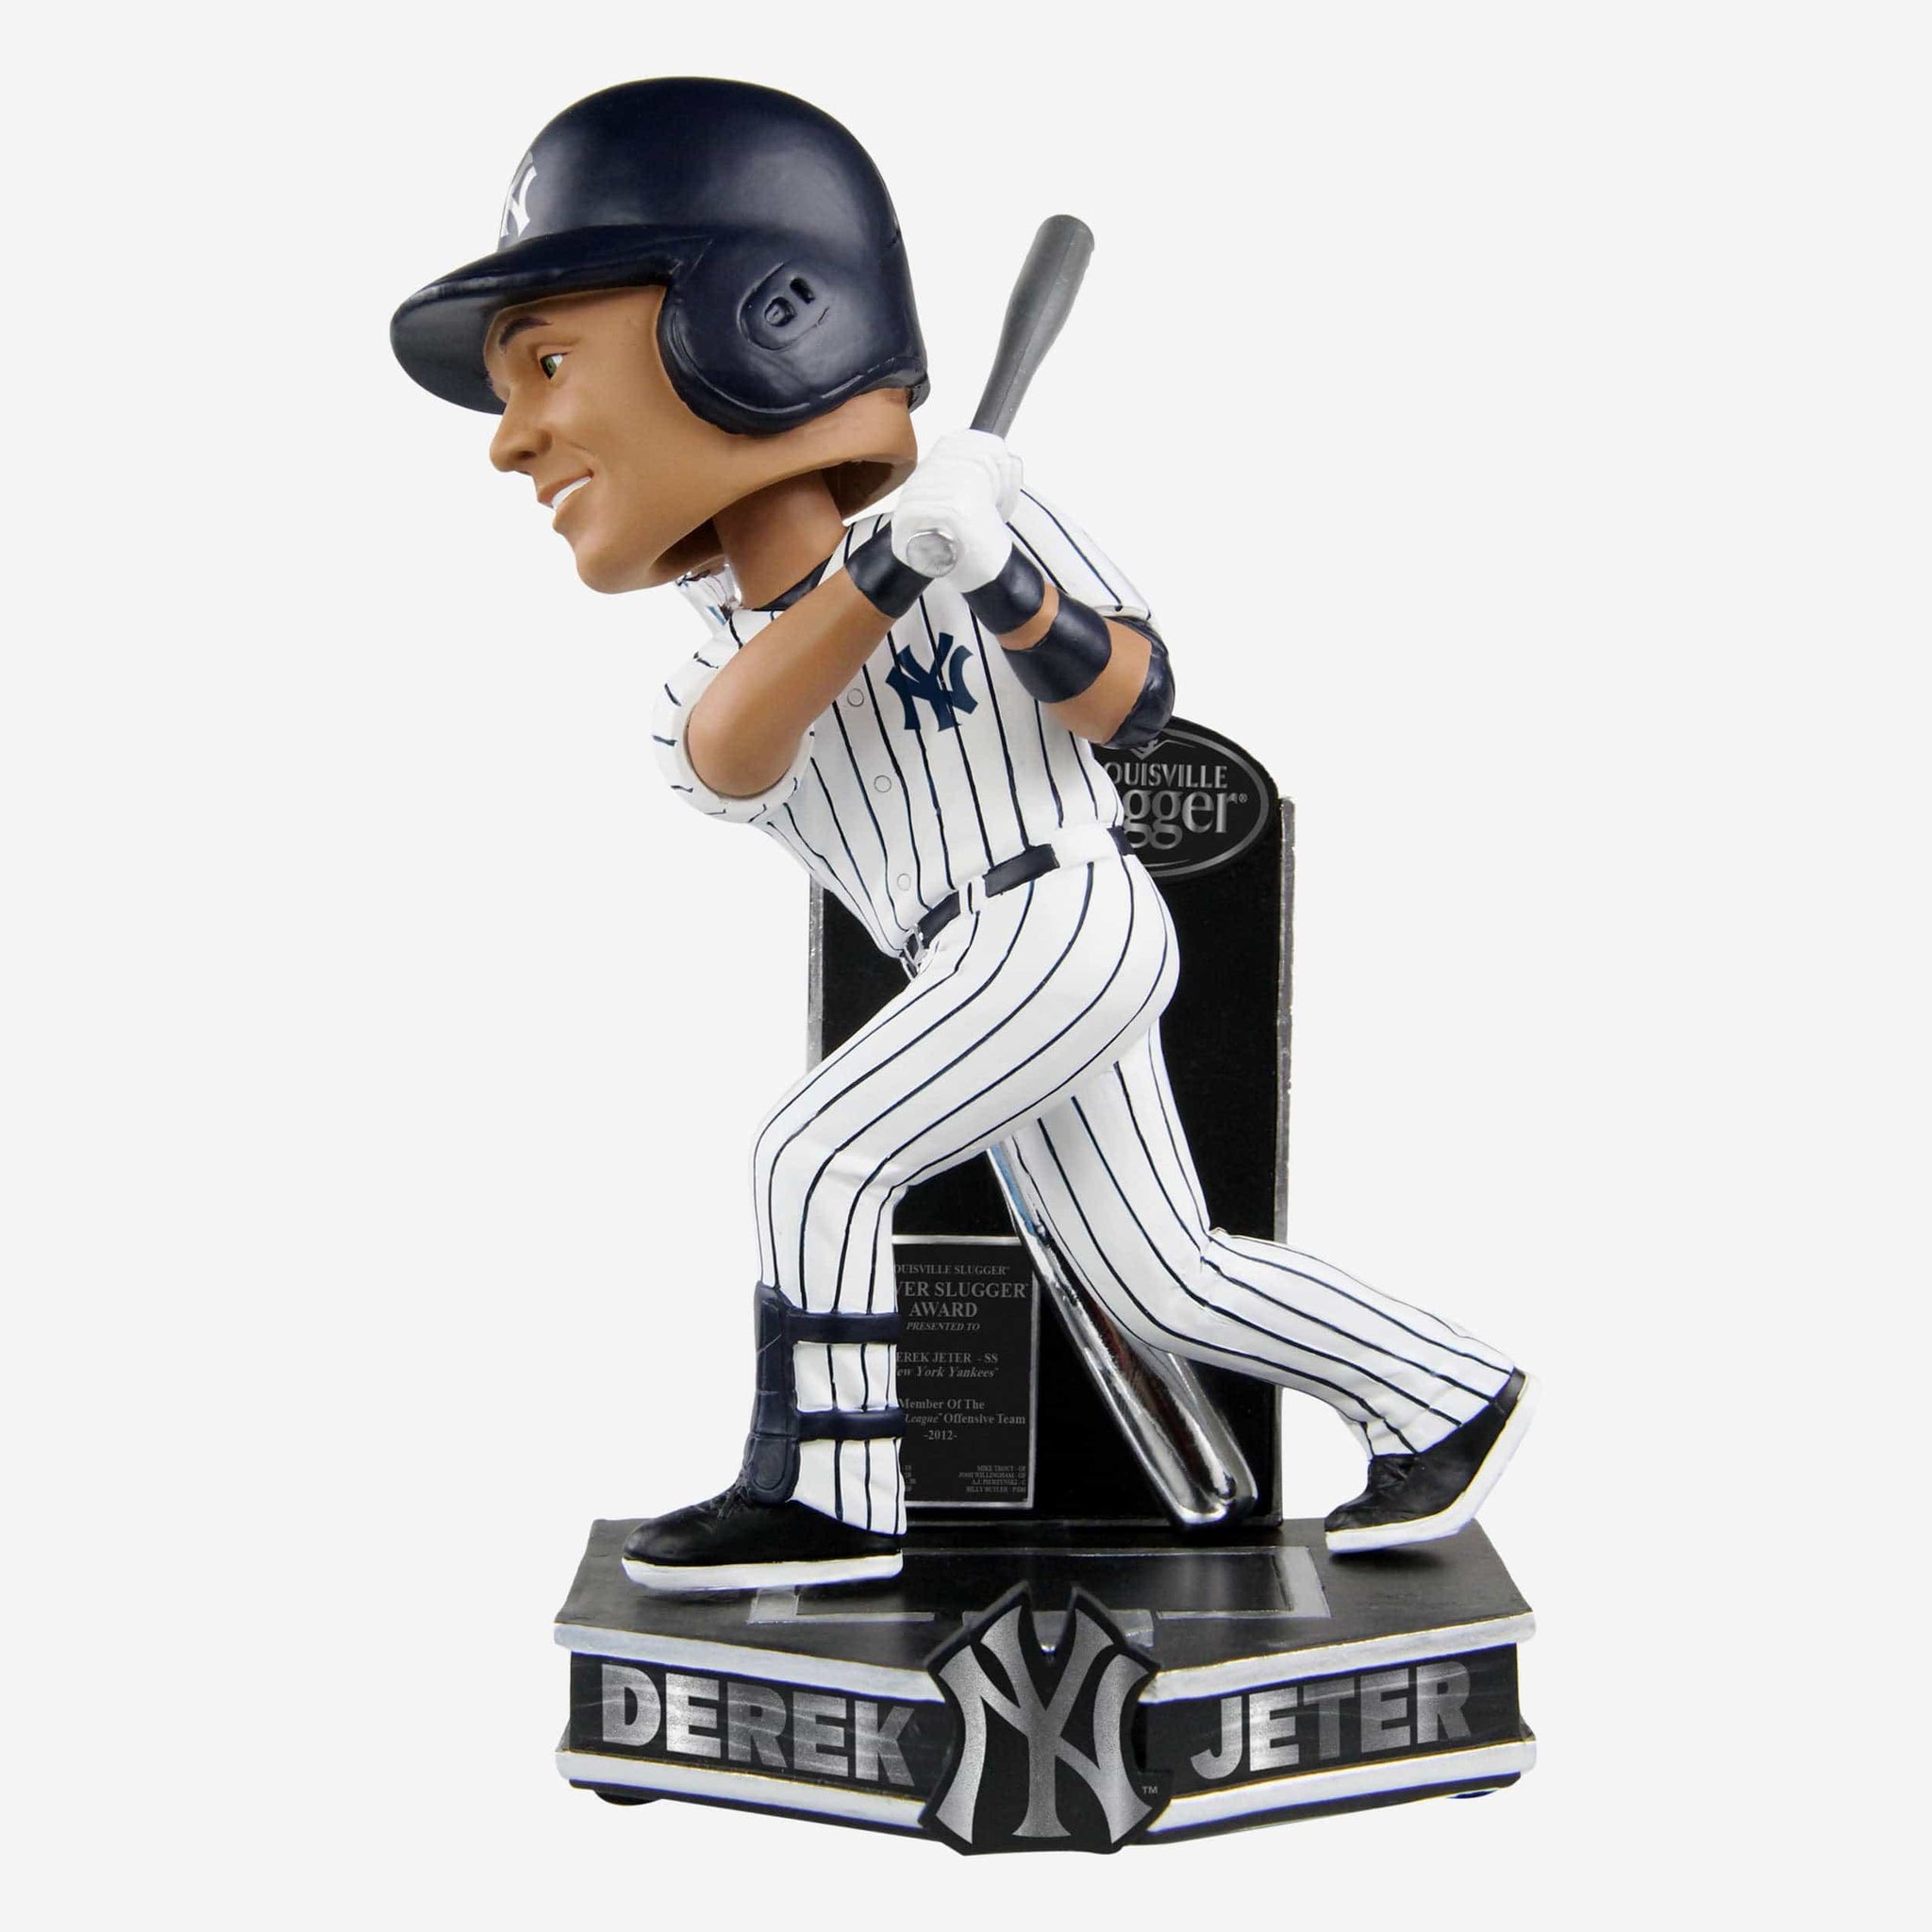 Derek Jeter New York Yankees MLB Men's LE T-Shirt